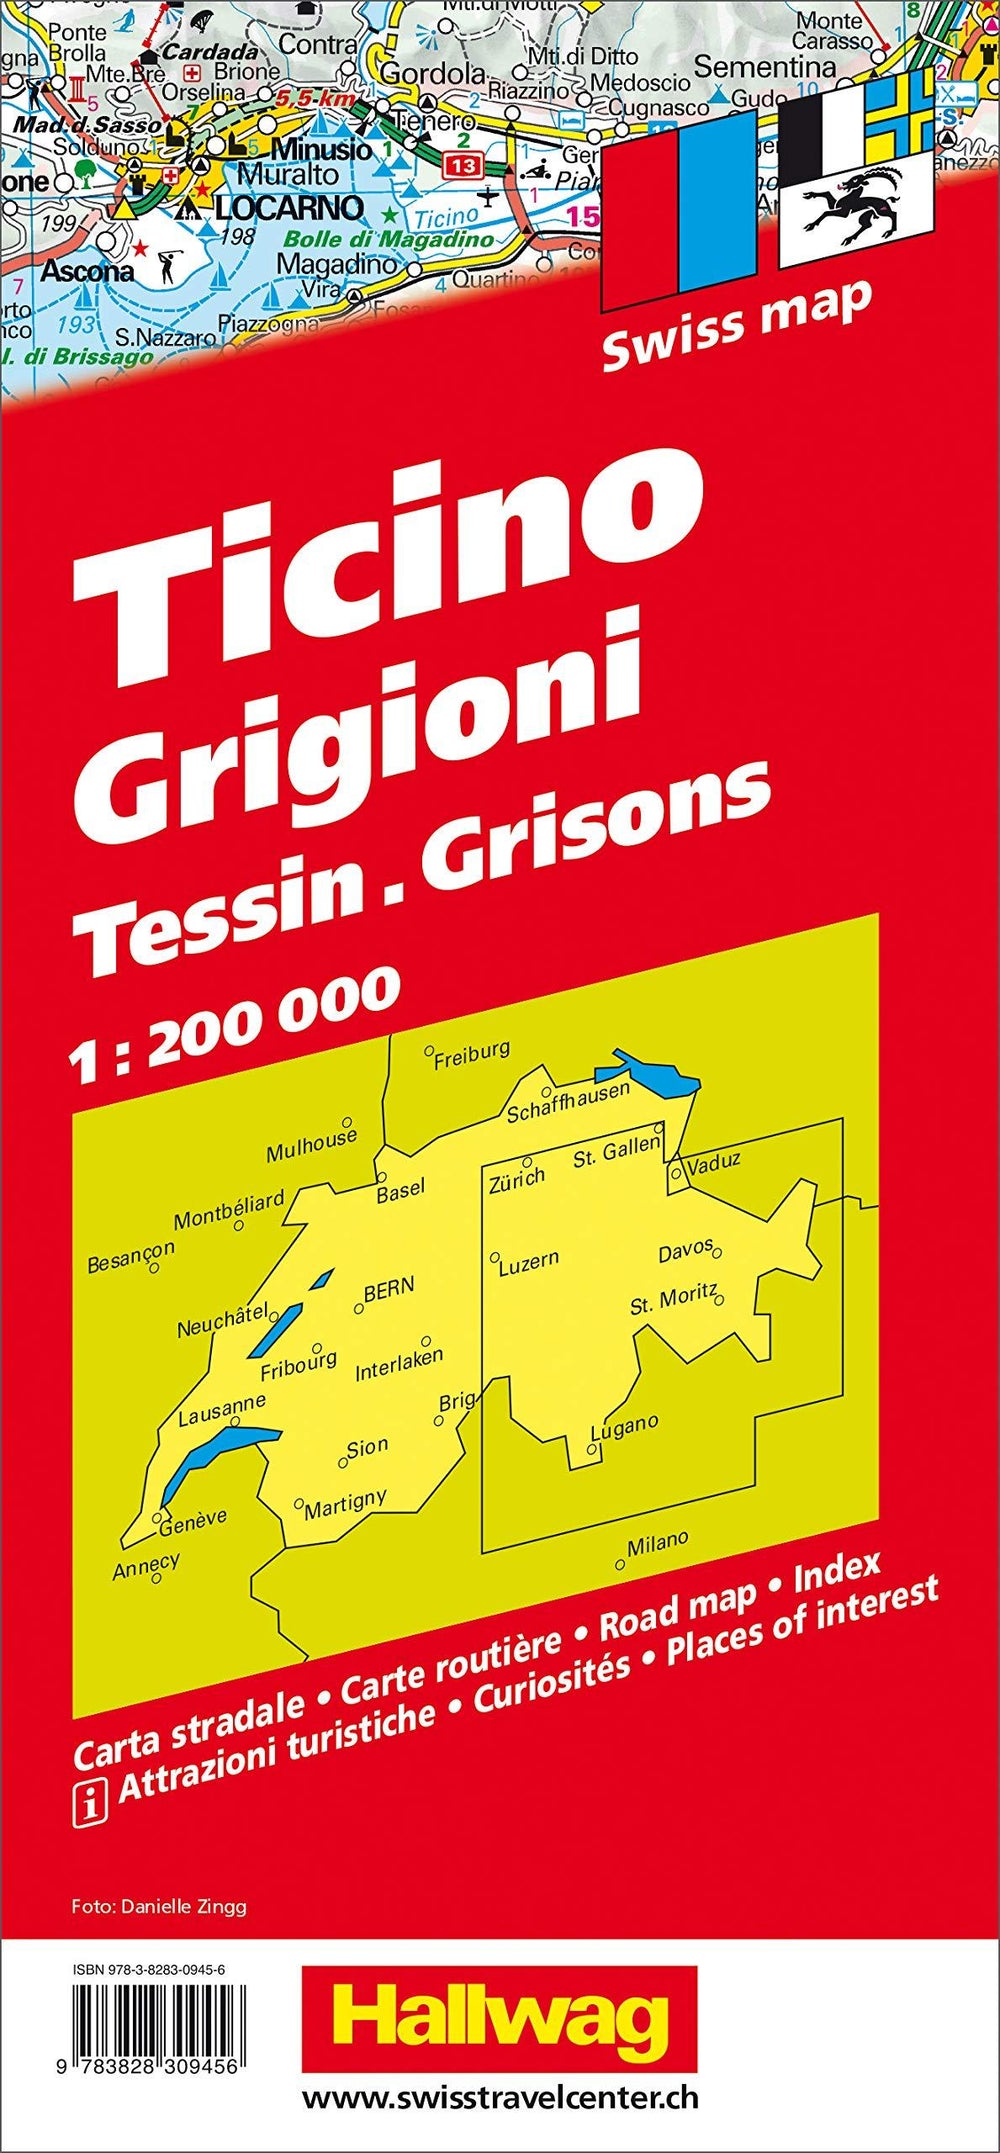 Carte routière - Tessin, Grisons (Suisse) | Hallwag carte pliée Hallwag 